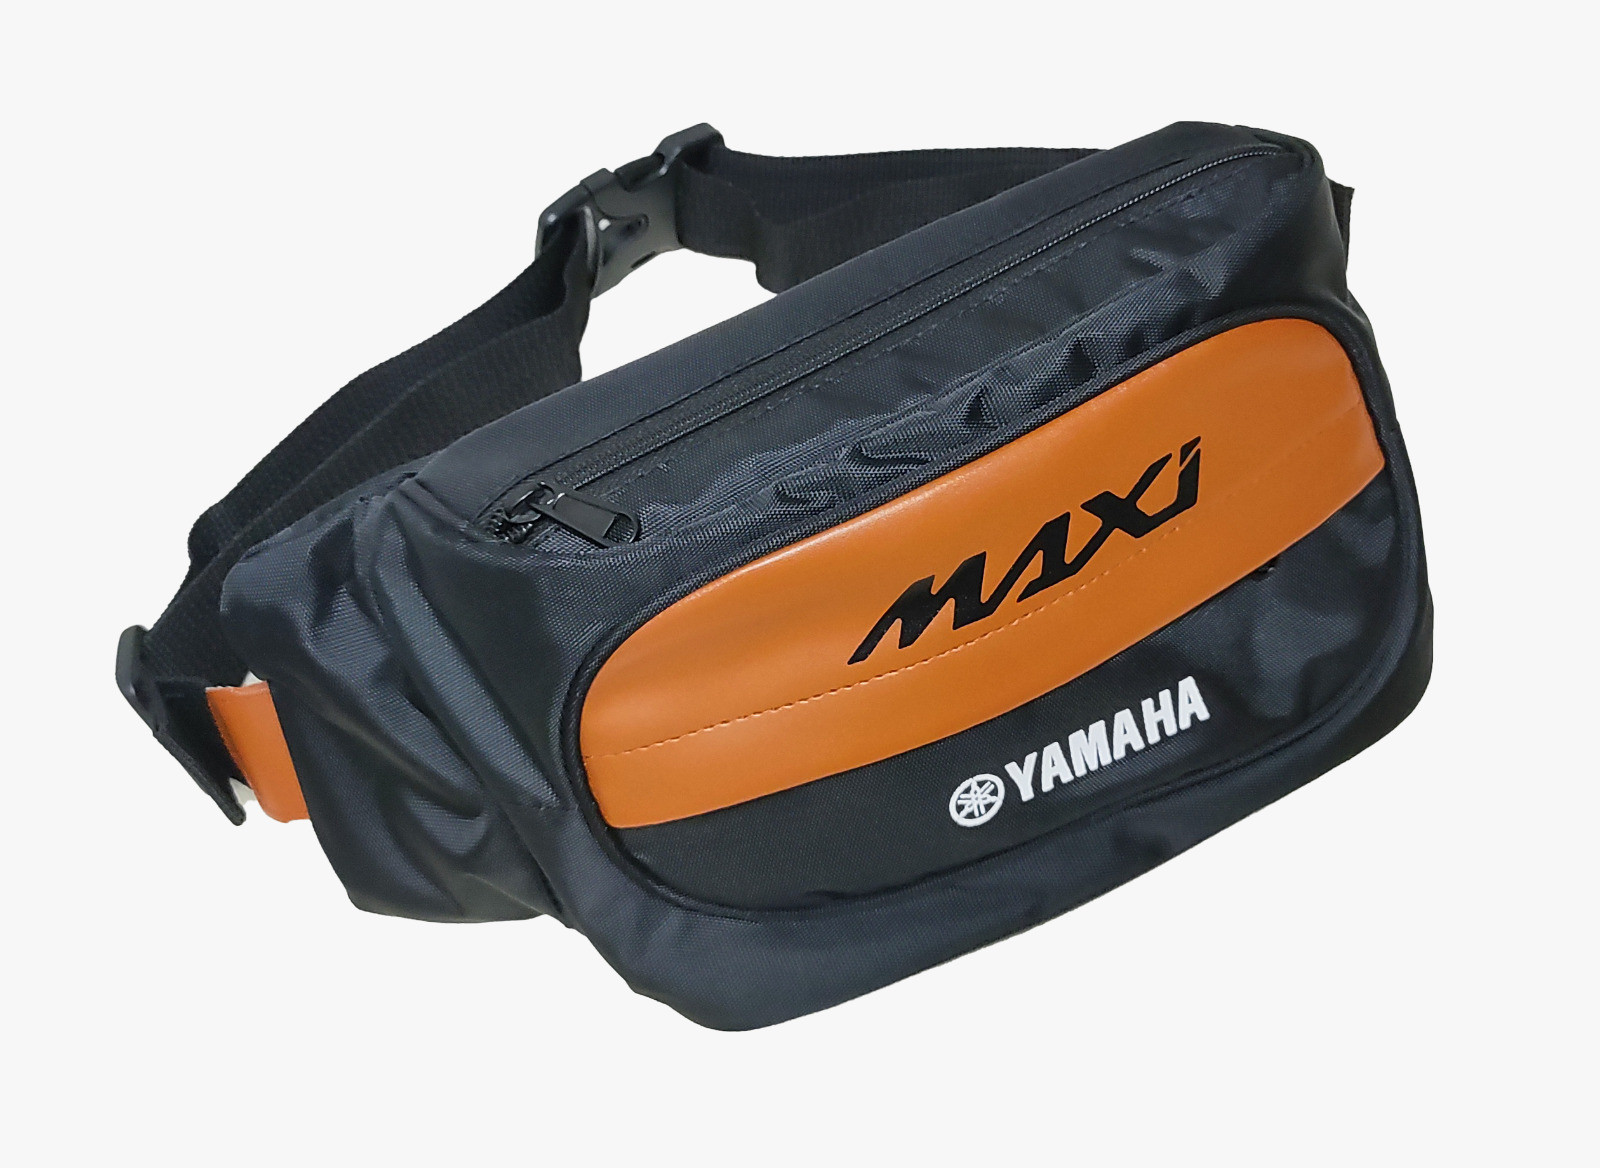 Tampil Lebih Keren saat Berkendara, Berikut Pilihan Apparel Baru Maxi Yamaha yang Bisa Jadi OOTD Kamu